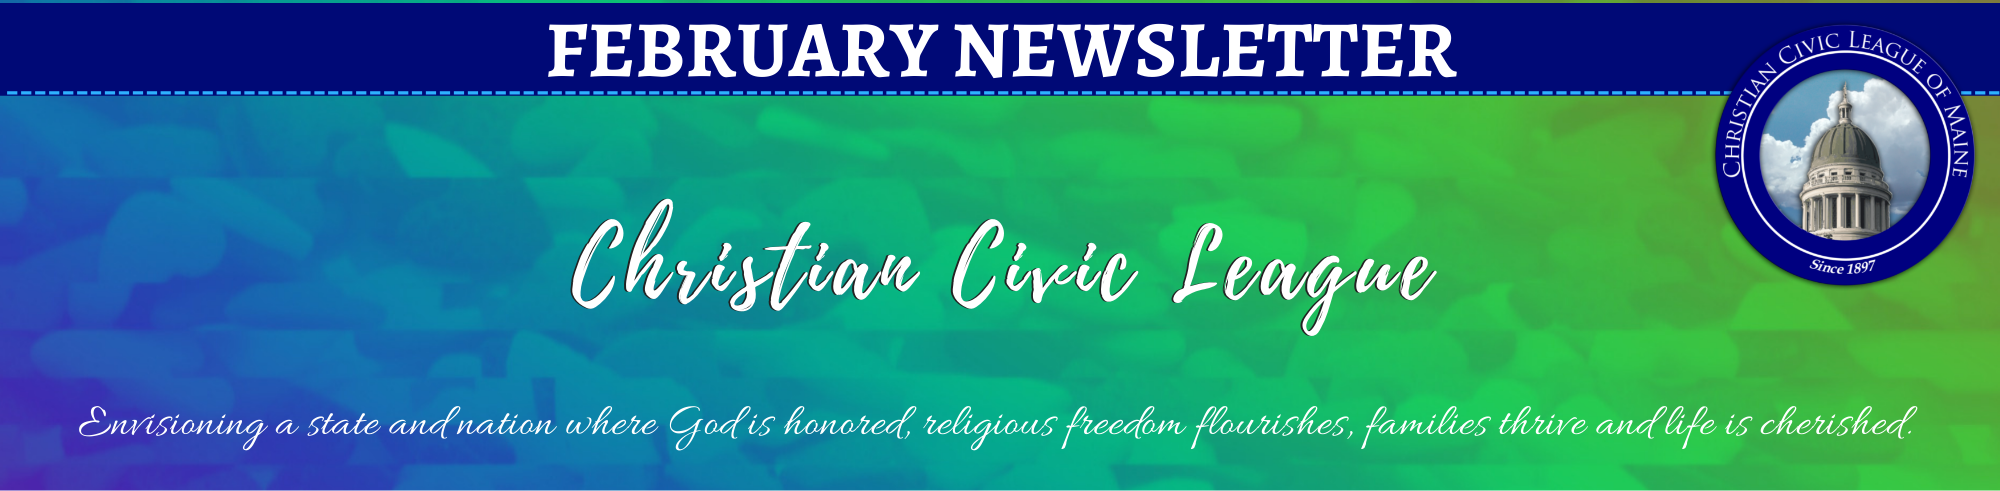 January Newsletter Banner